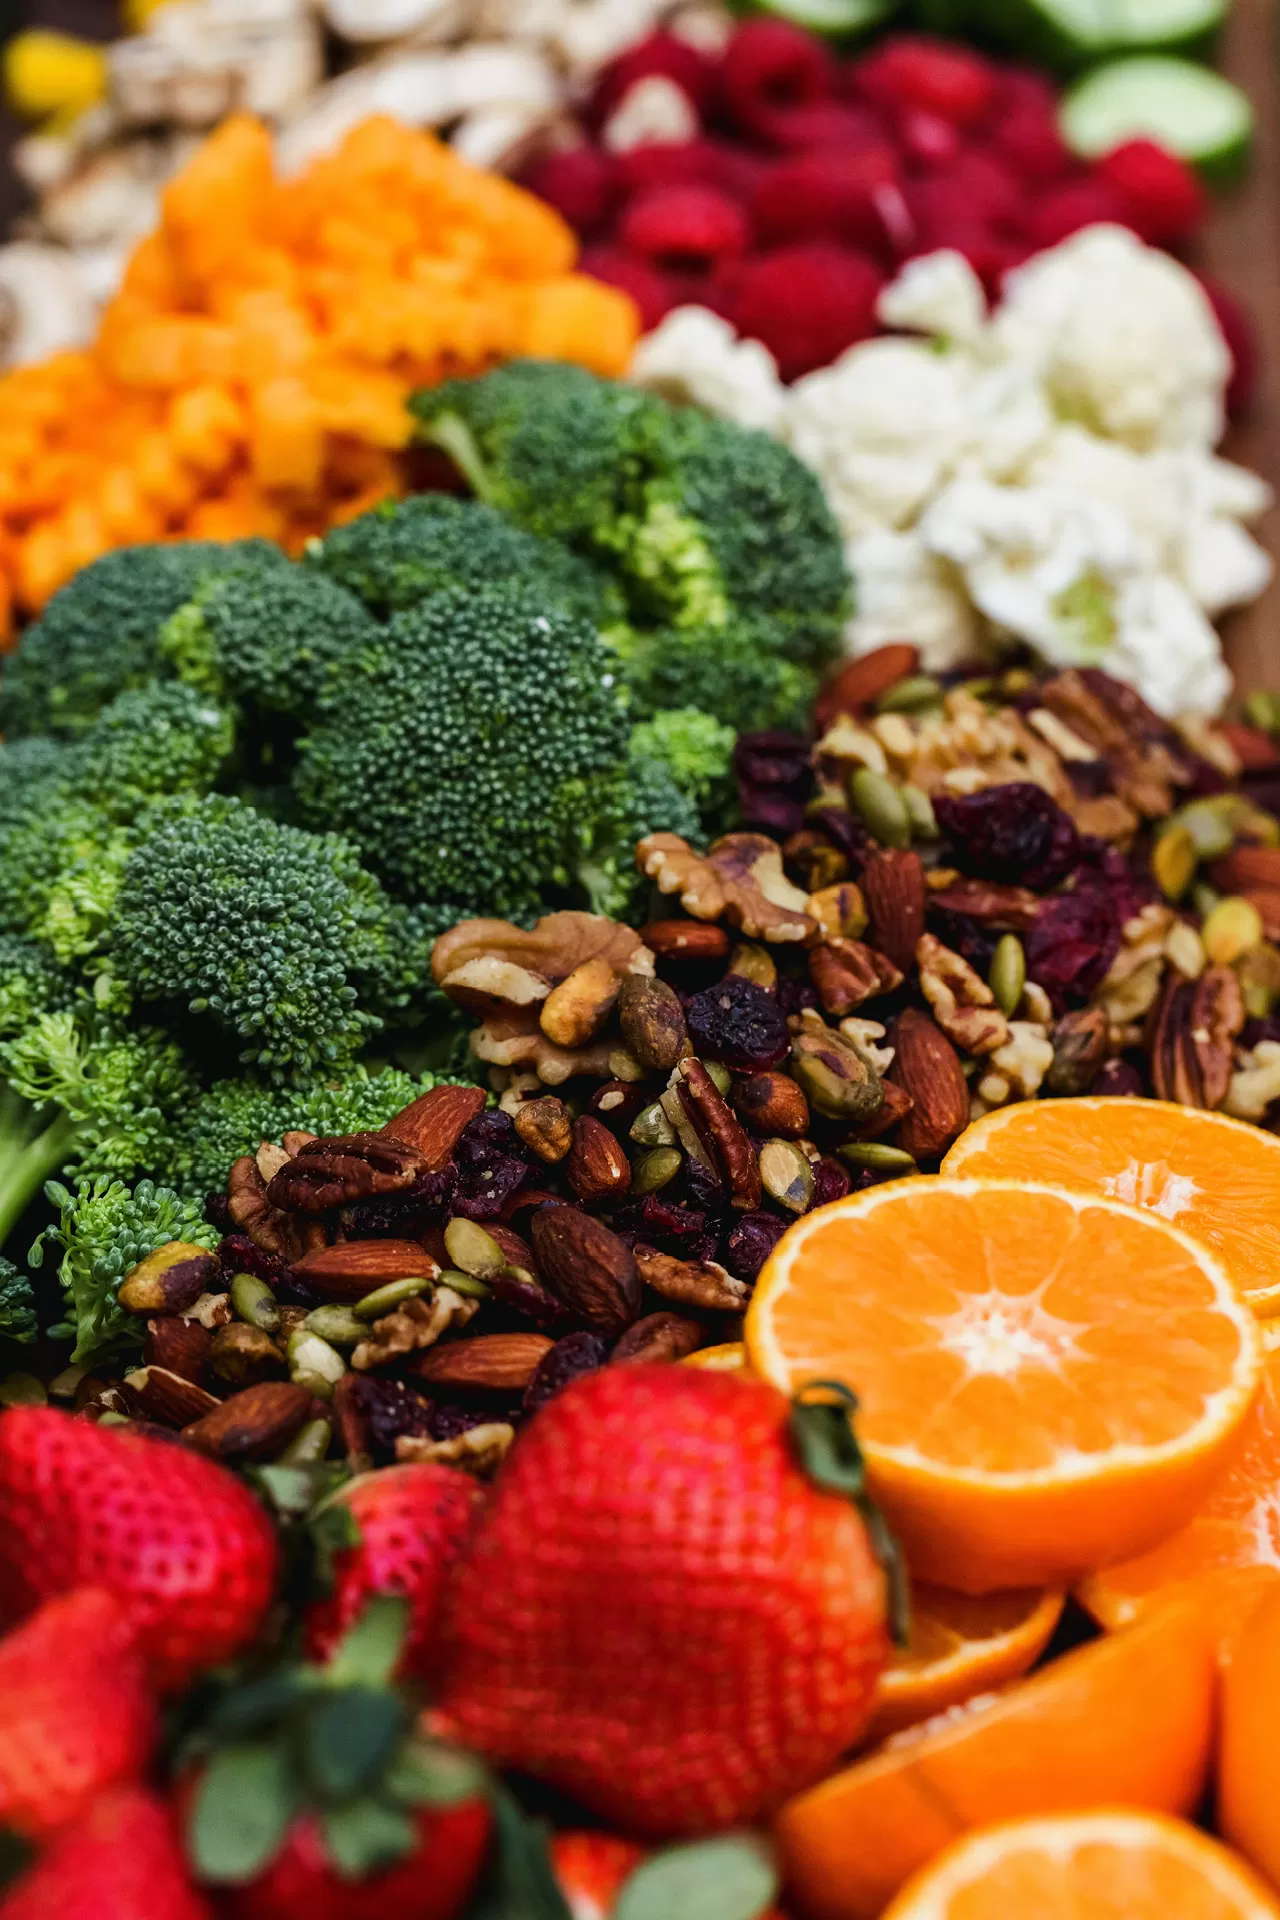 Gesunde Nahrungsmittel schön arrangiert: Gemüse, Broccoli, Nüsse, Erdbeeren und Orangen.